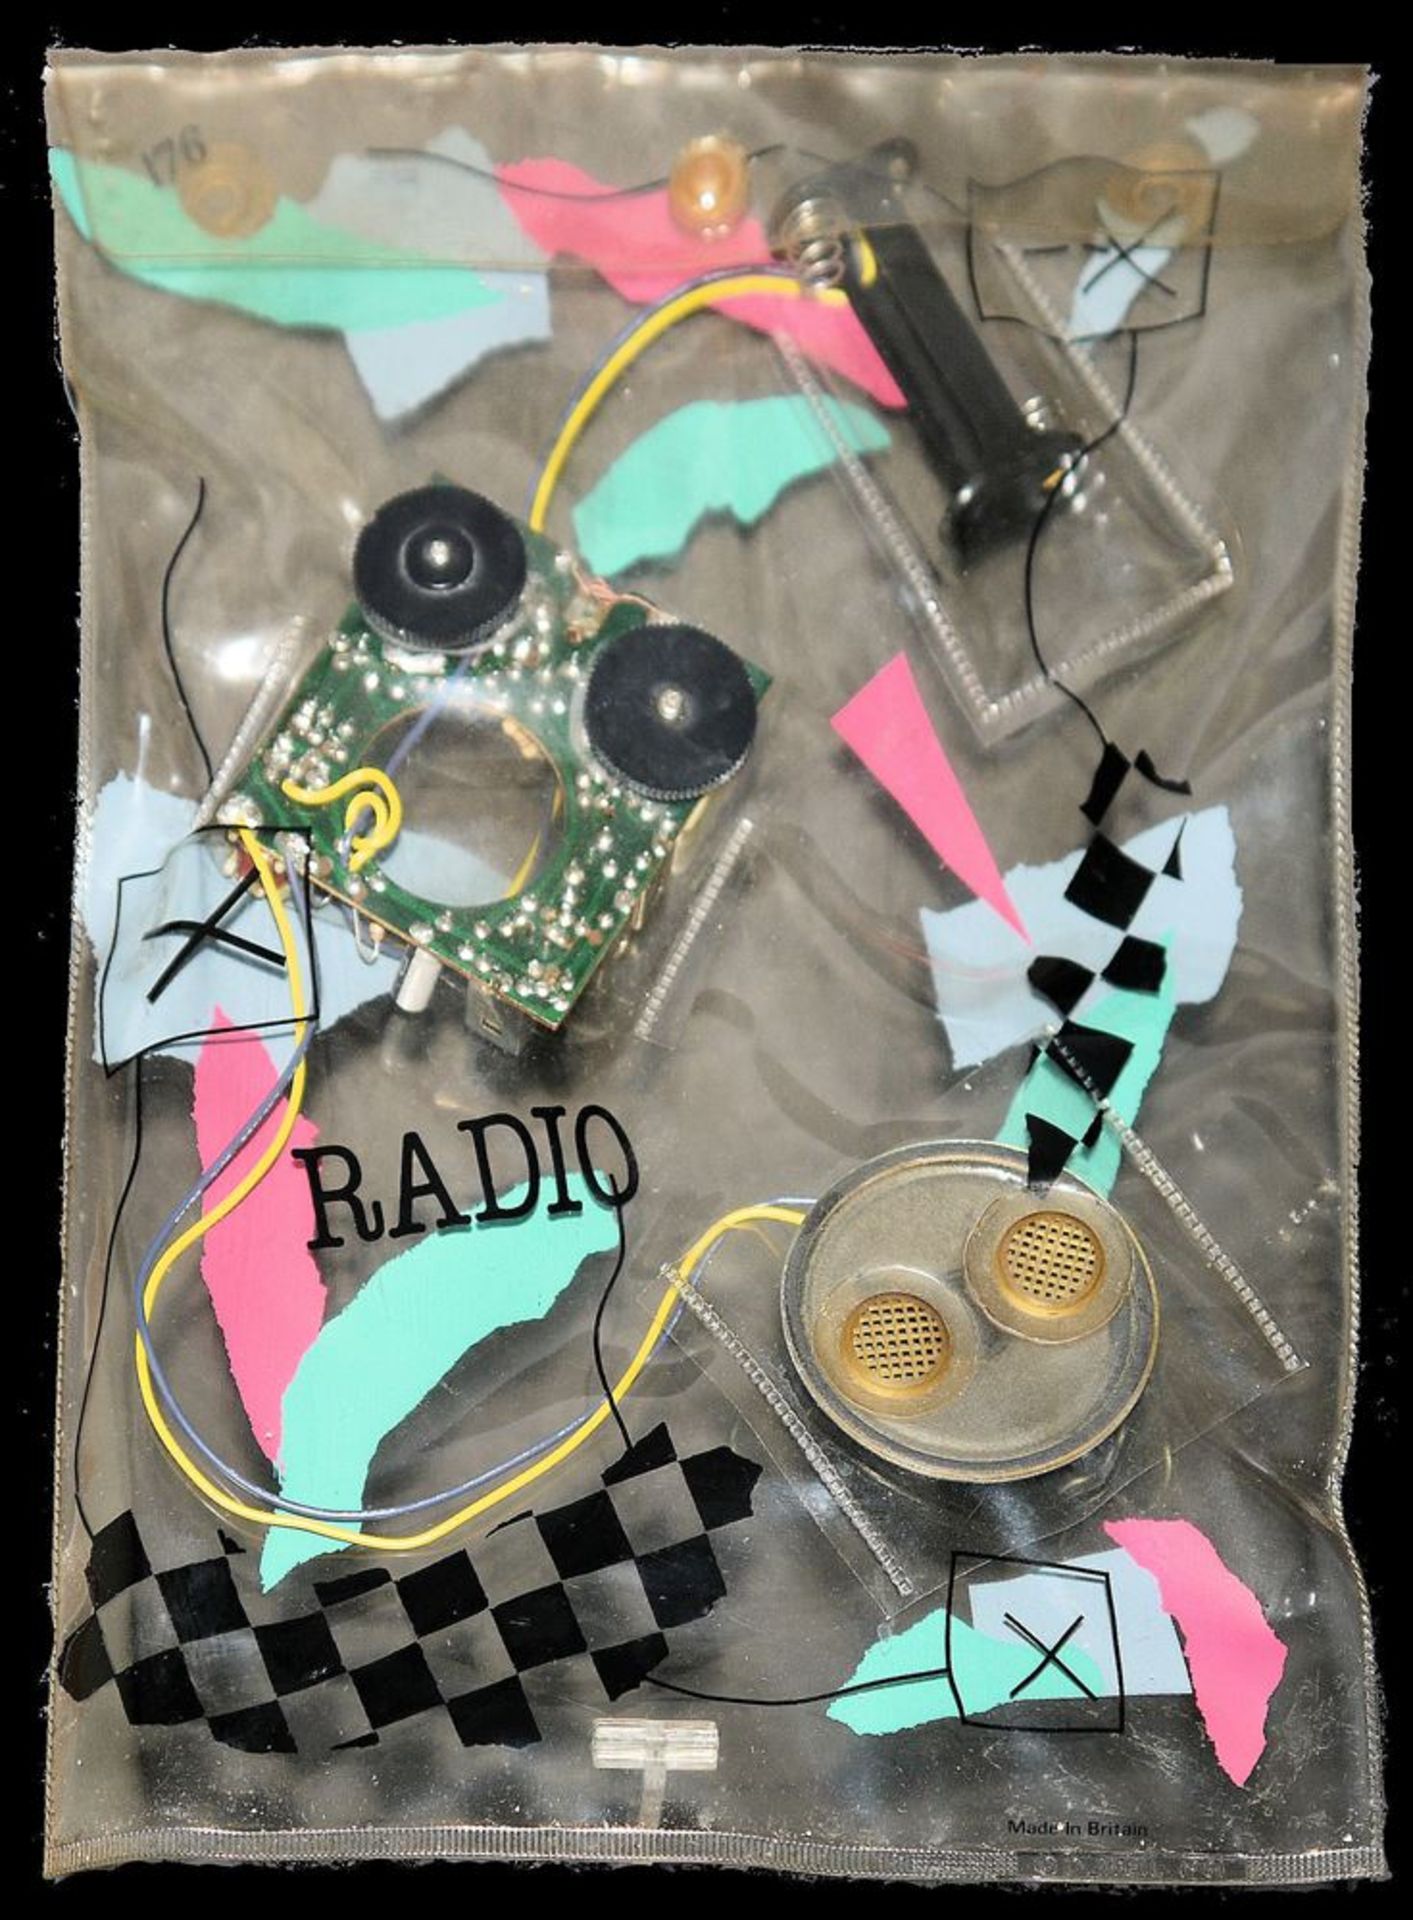 Daniel Weil, "Radio Bag" (auch: Transistor Bag Radio) 1981, Multiple, Design-Ikone!